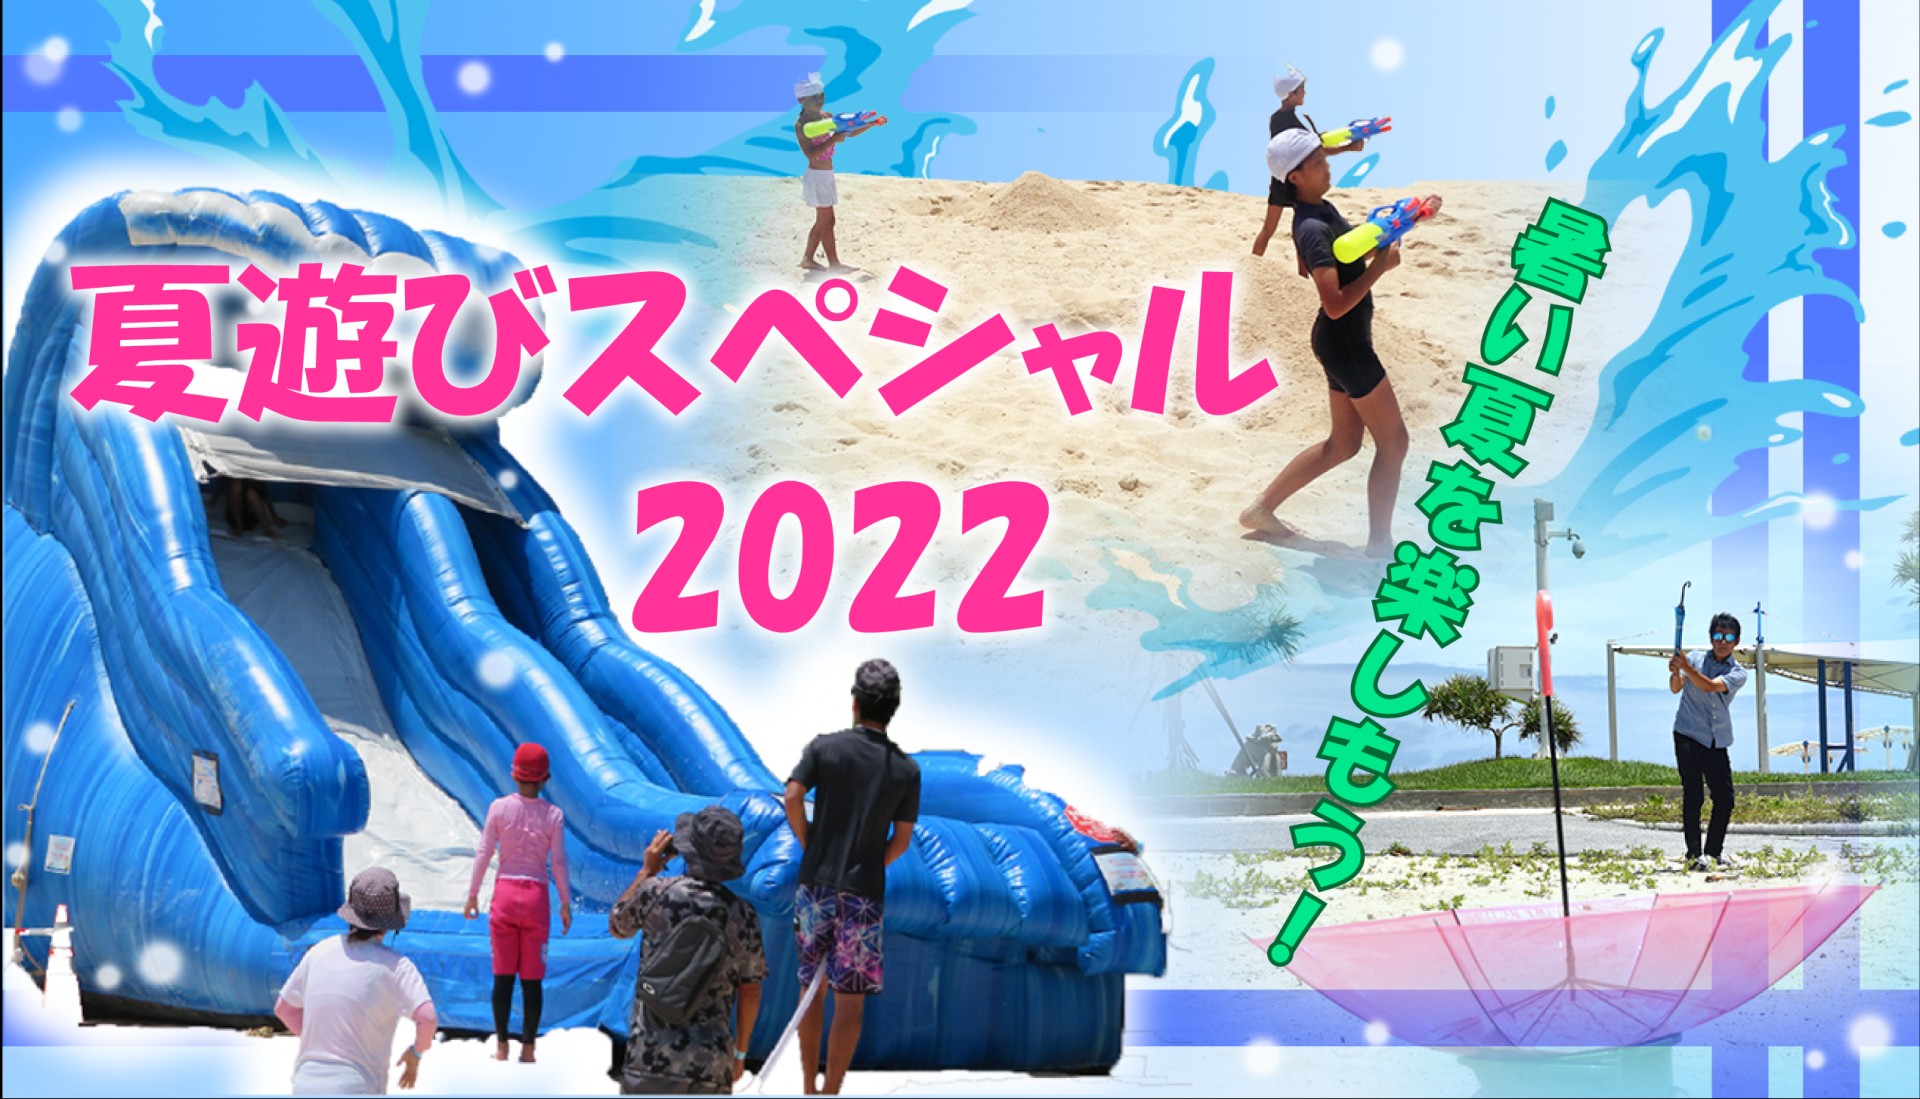 暑い夏を楽しもう 海洋博公園 夏遊びスペシャル22開催 海洋博公園 Official Site スマートフォン版